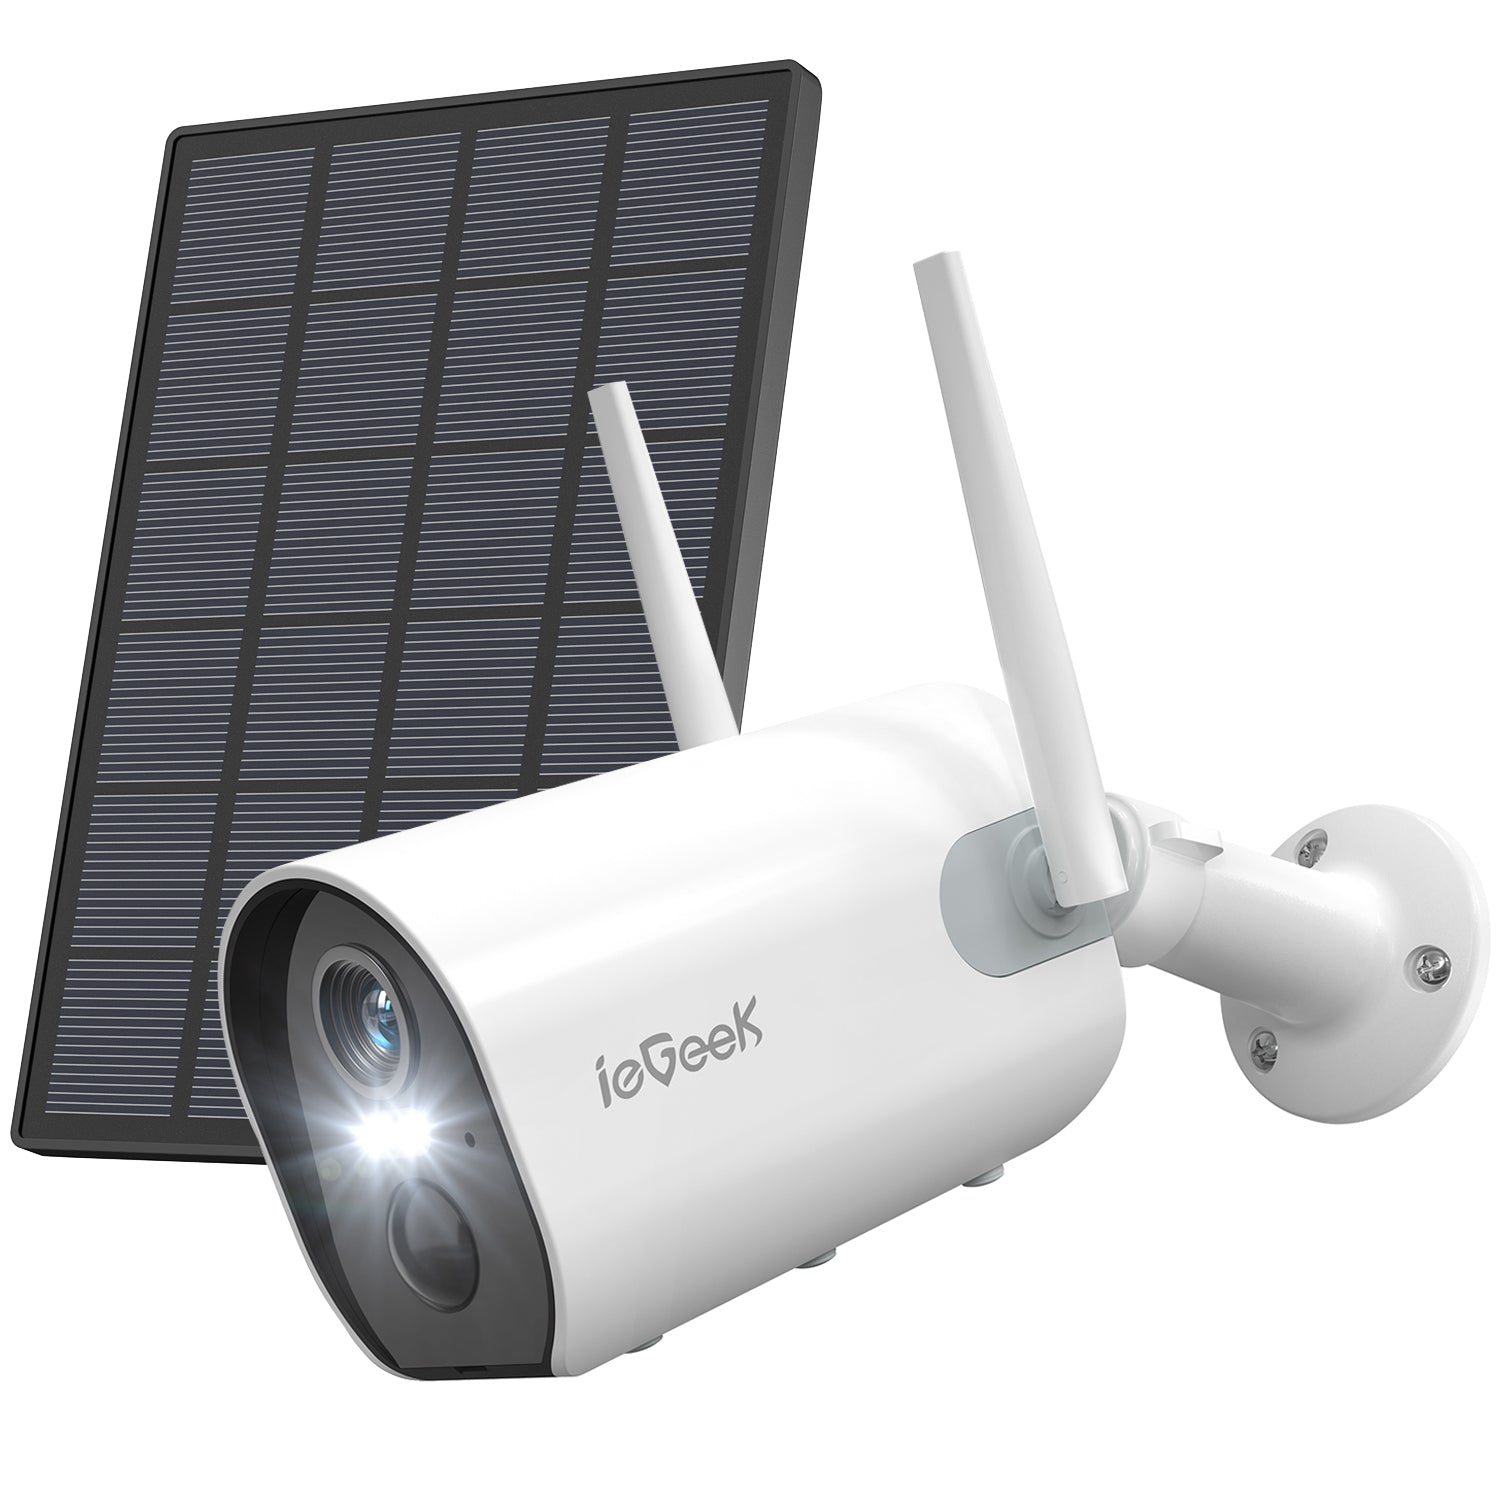 Camera surveillance WiFi Exterieure ieGeek 2K - 360° Camera IP, Vision  Nocturne Couleur (vendeur tiers) –